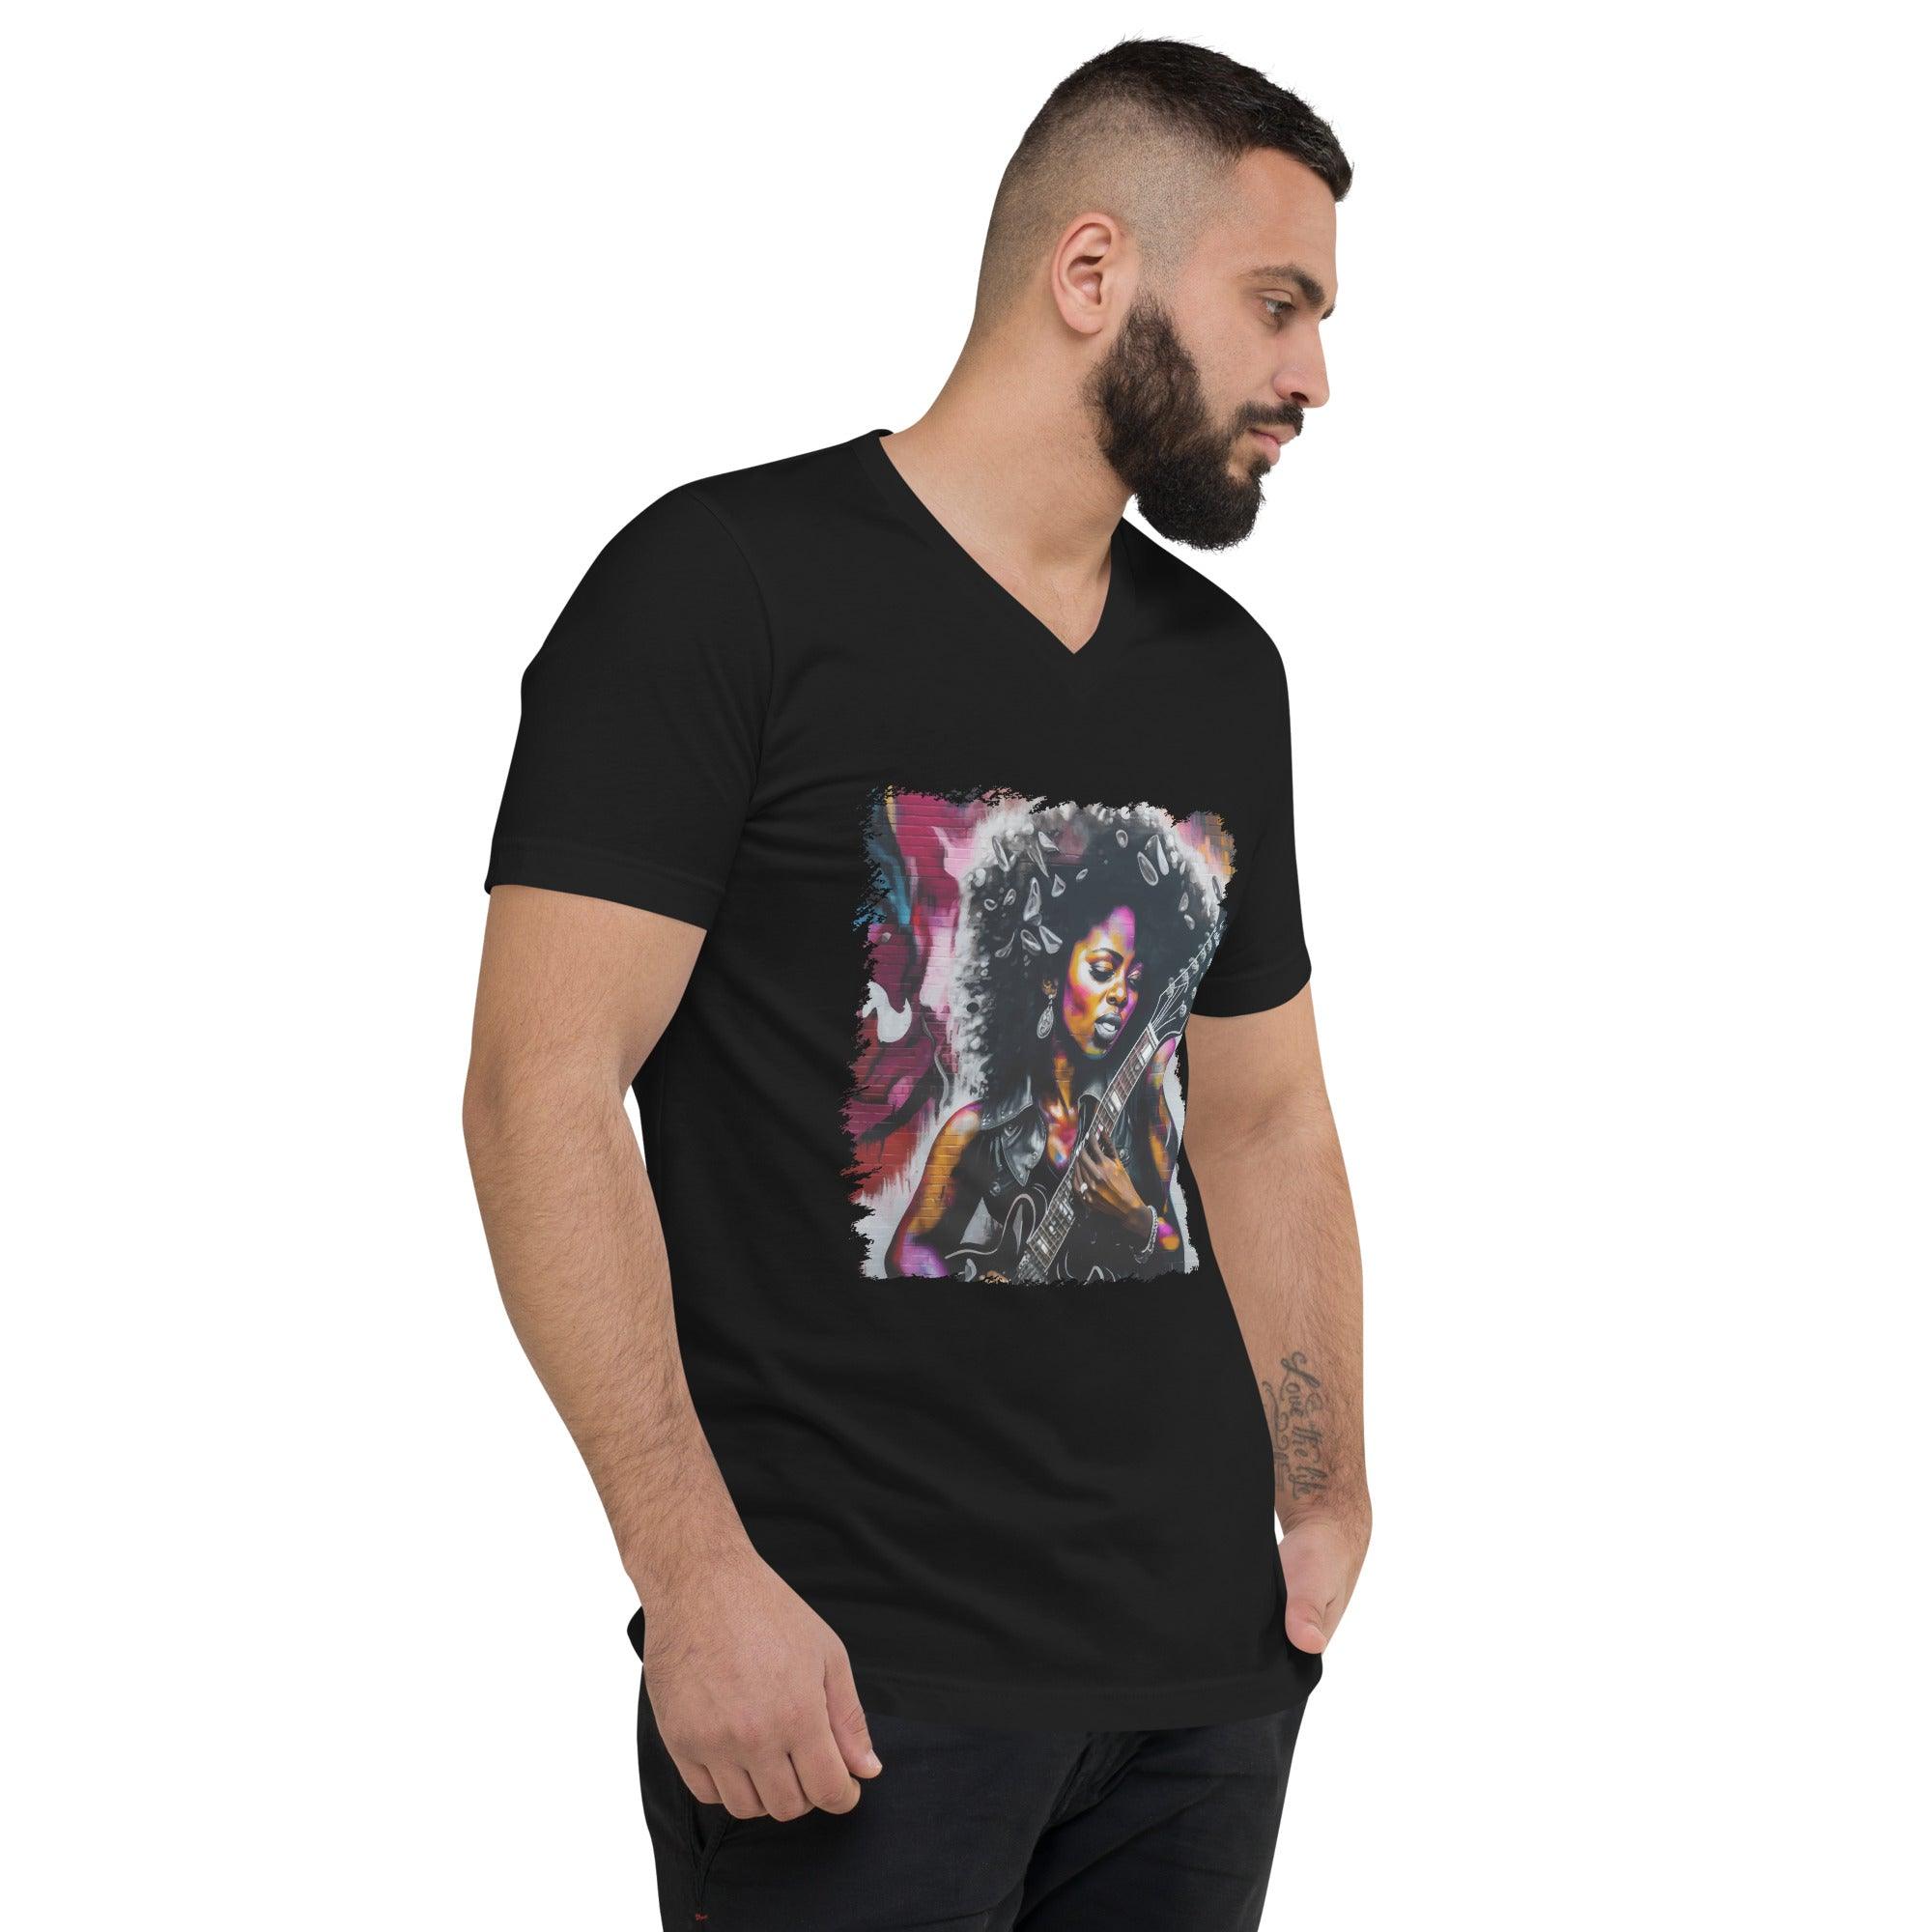 Rocking Out, Feminine Style Unisex Short Sleeve V-Neck T-Shirt - Beyond T-shirts